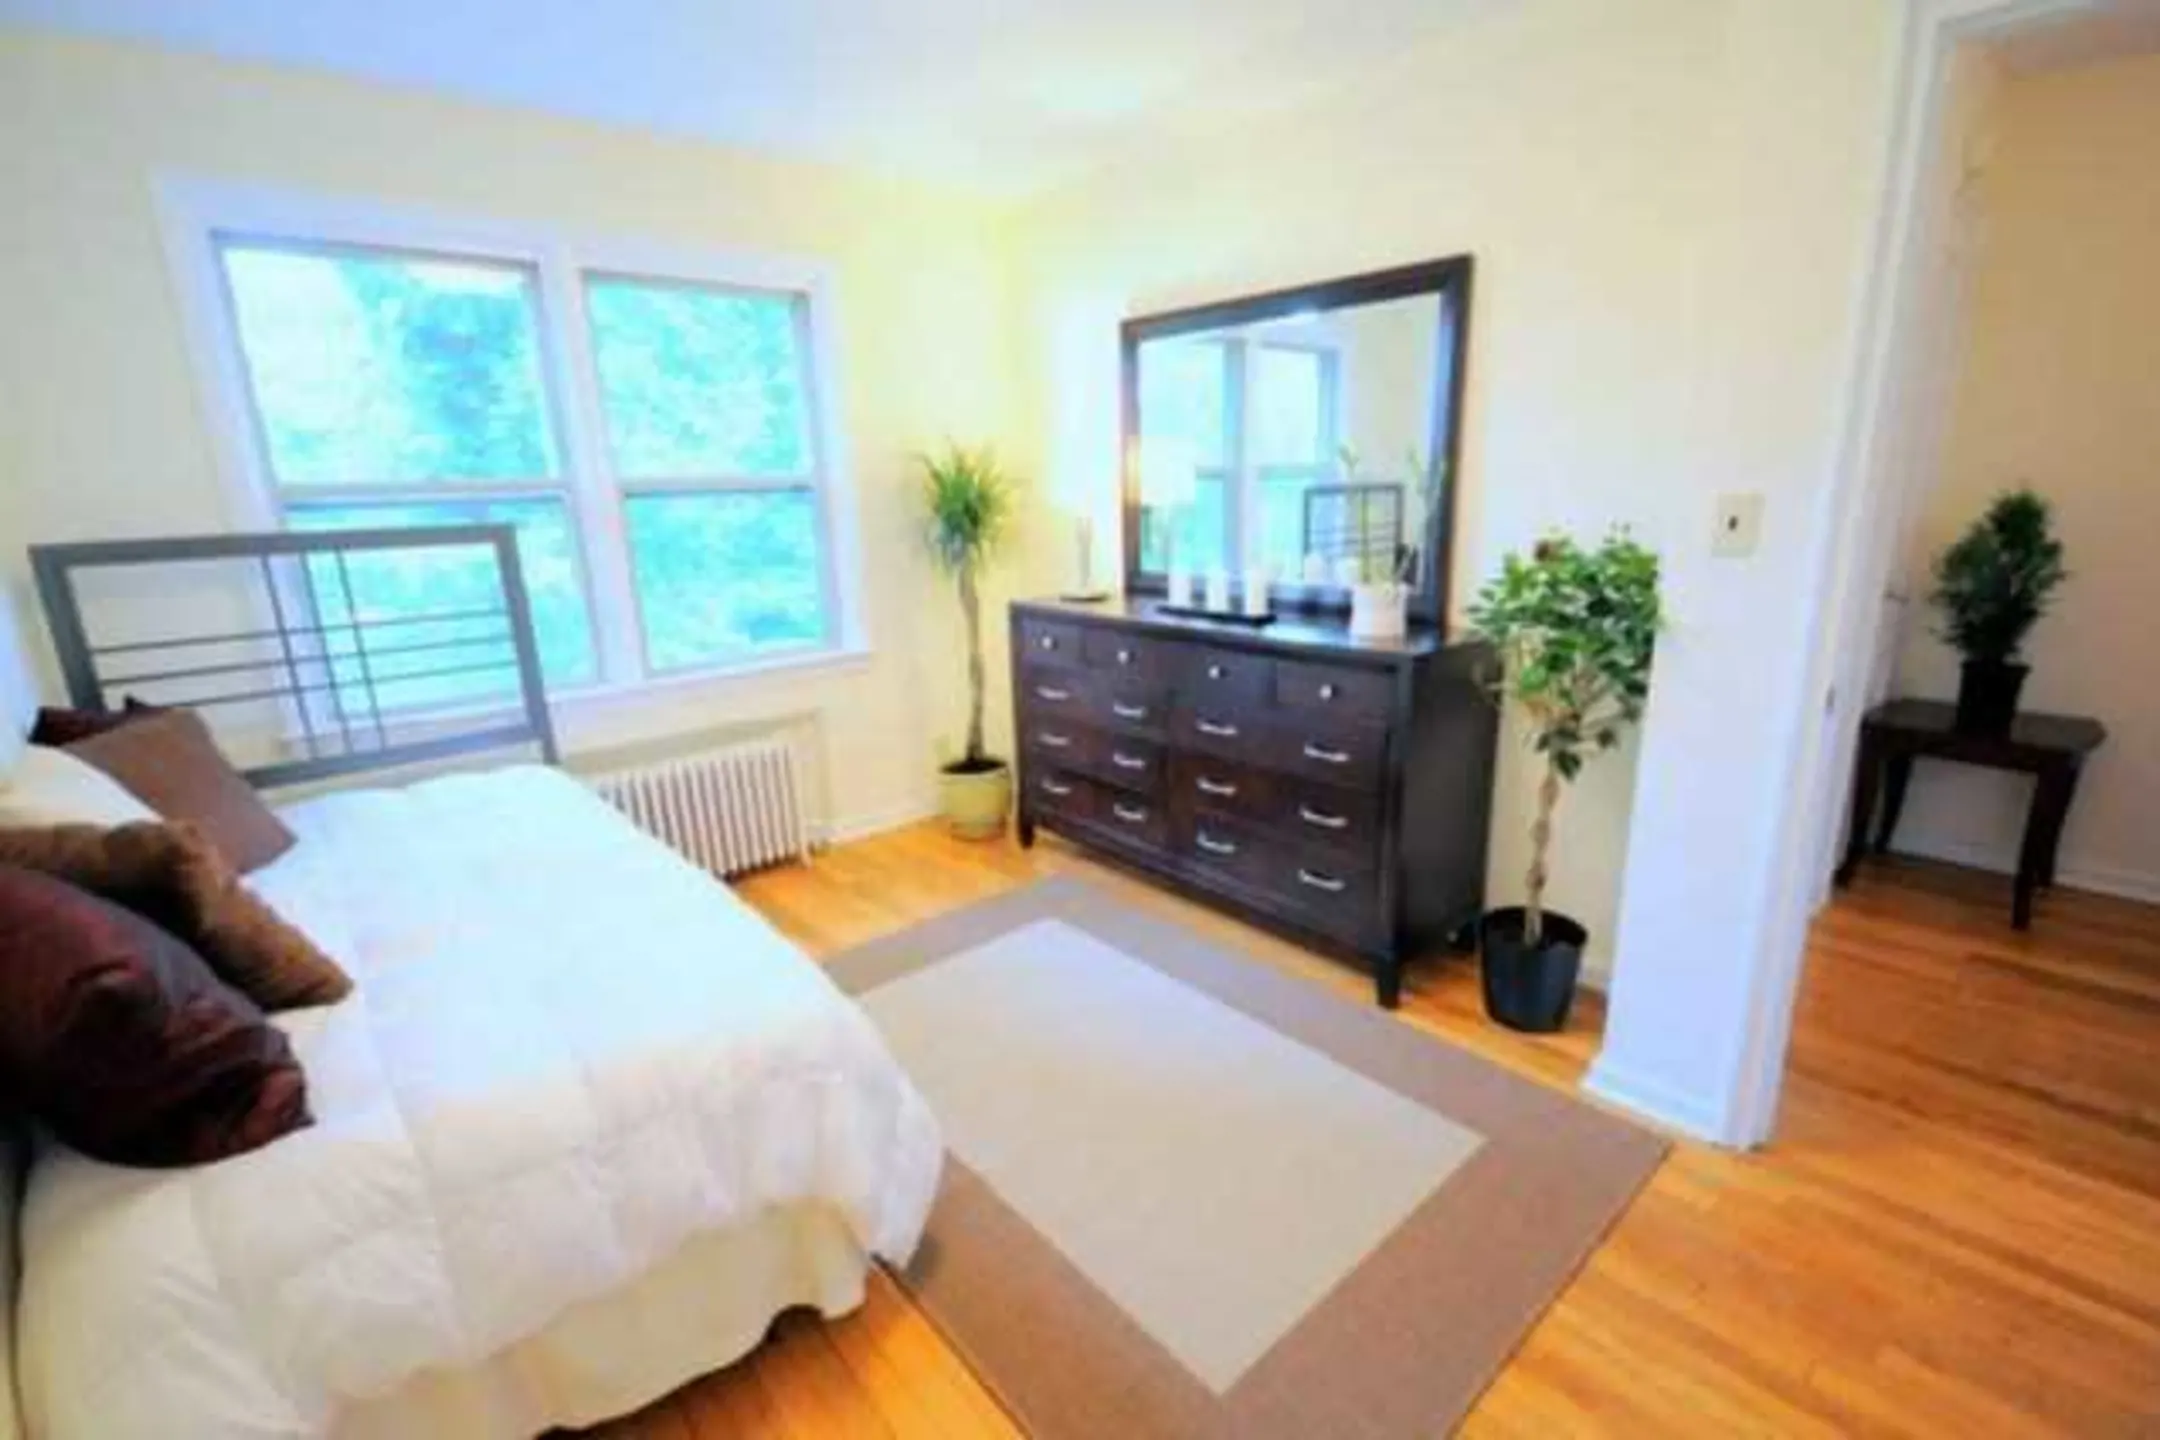 Bedroom - Warren J. Lockwood Village - Roselle, NJ